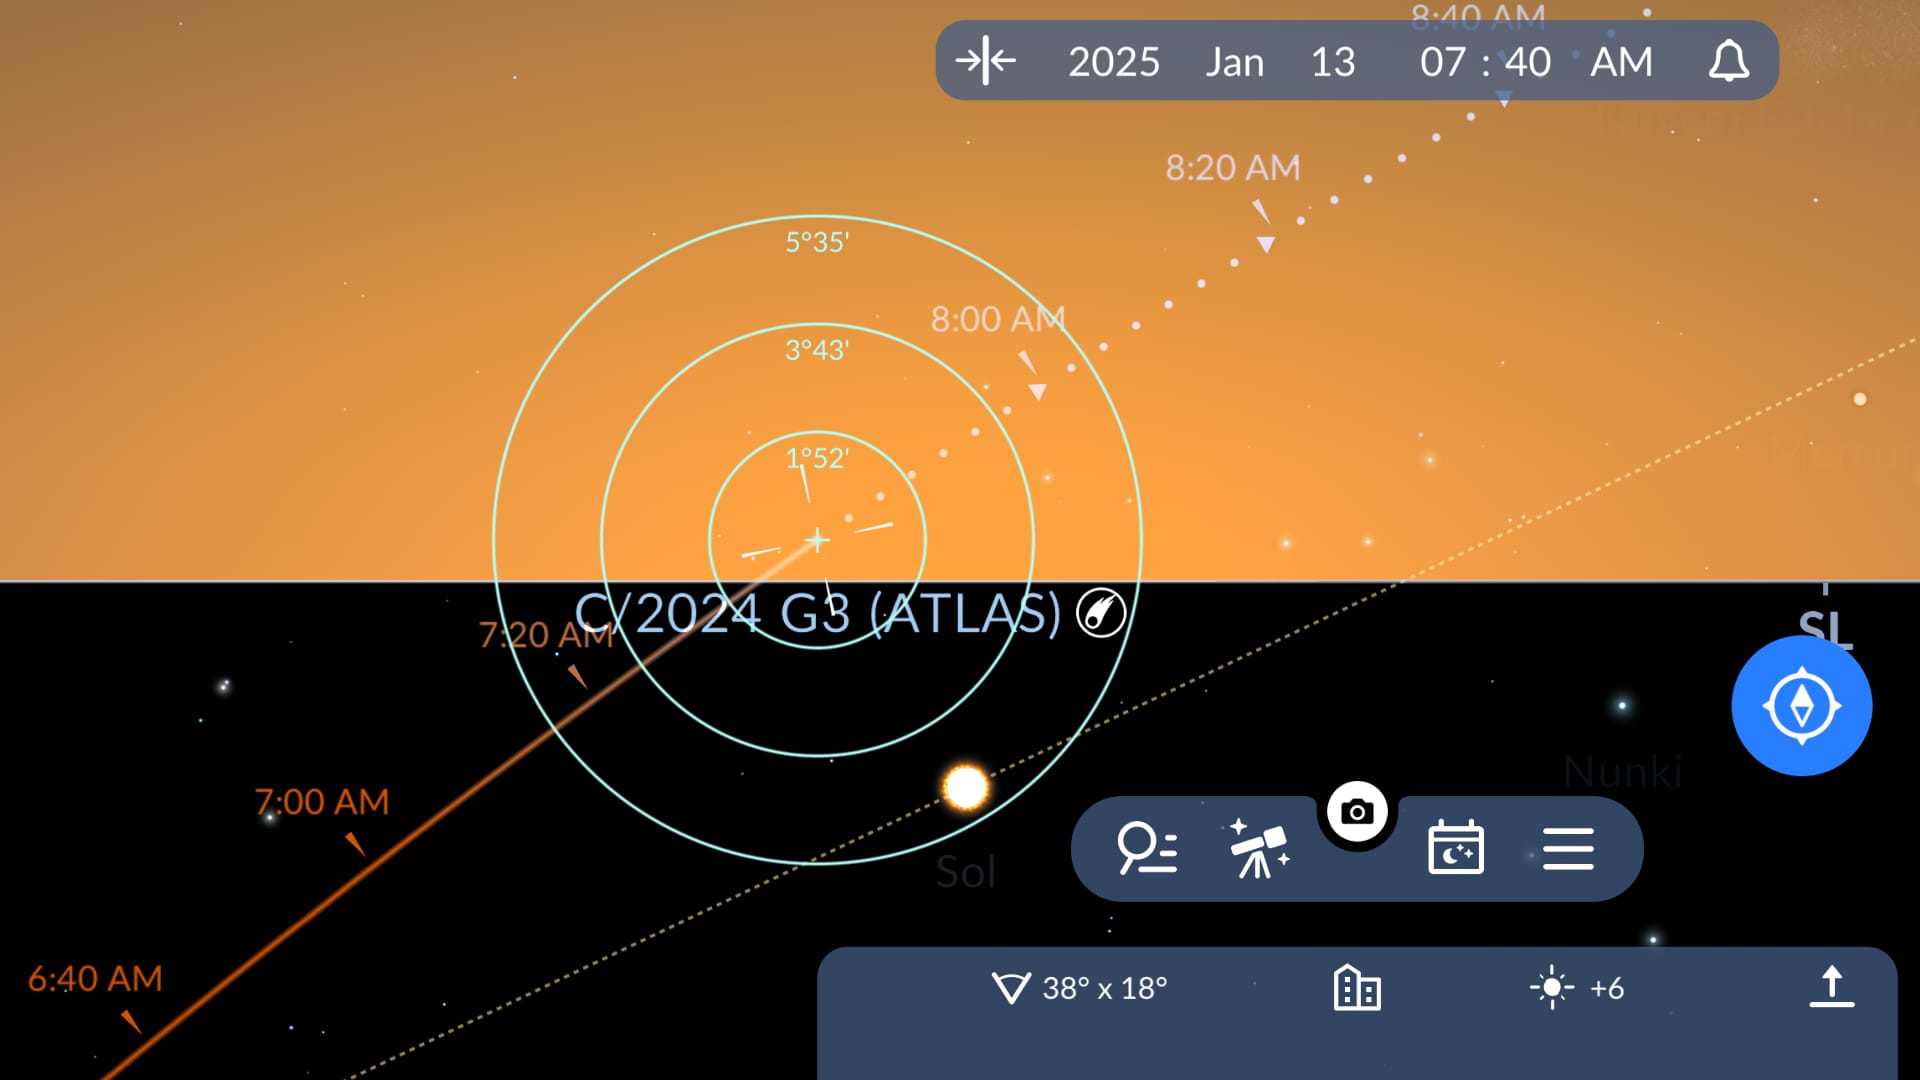 Elongation of C/2024 G3 (ATLAS)